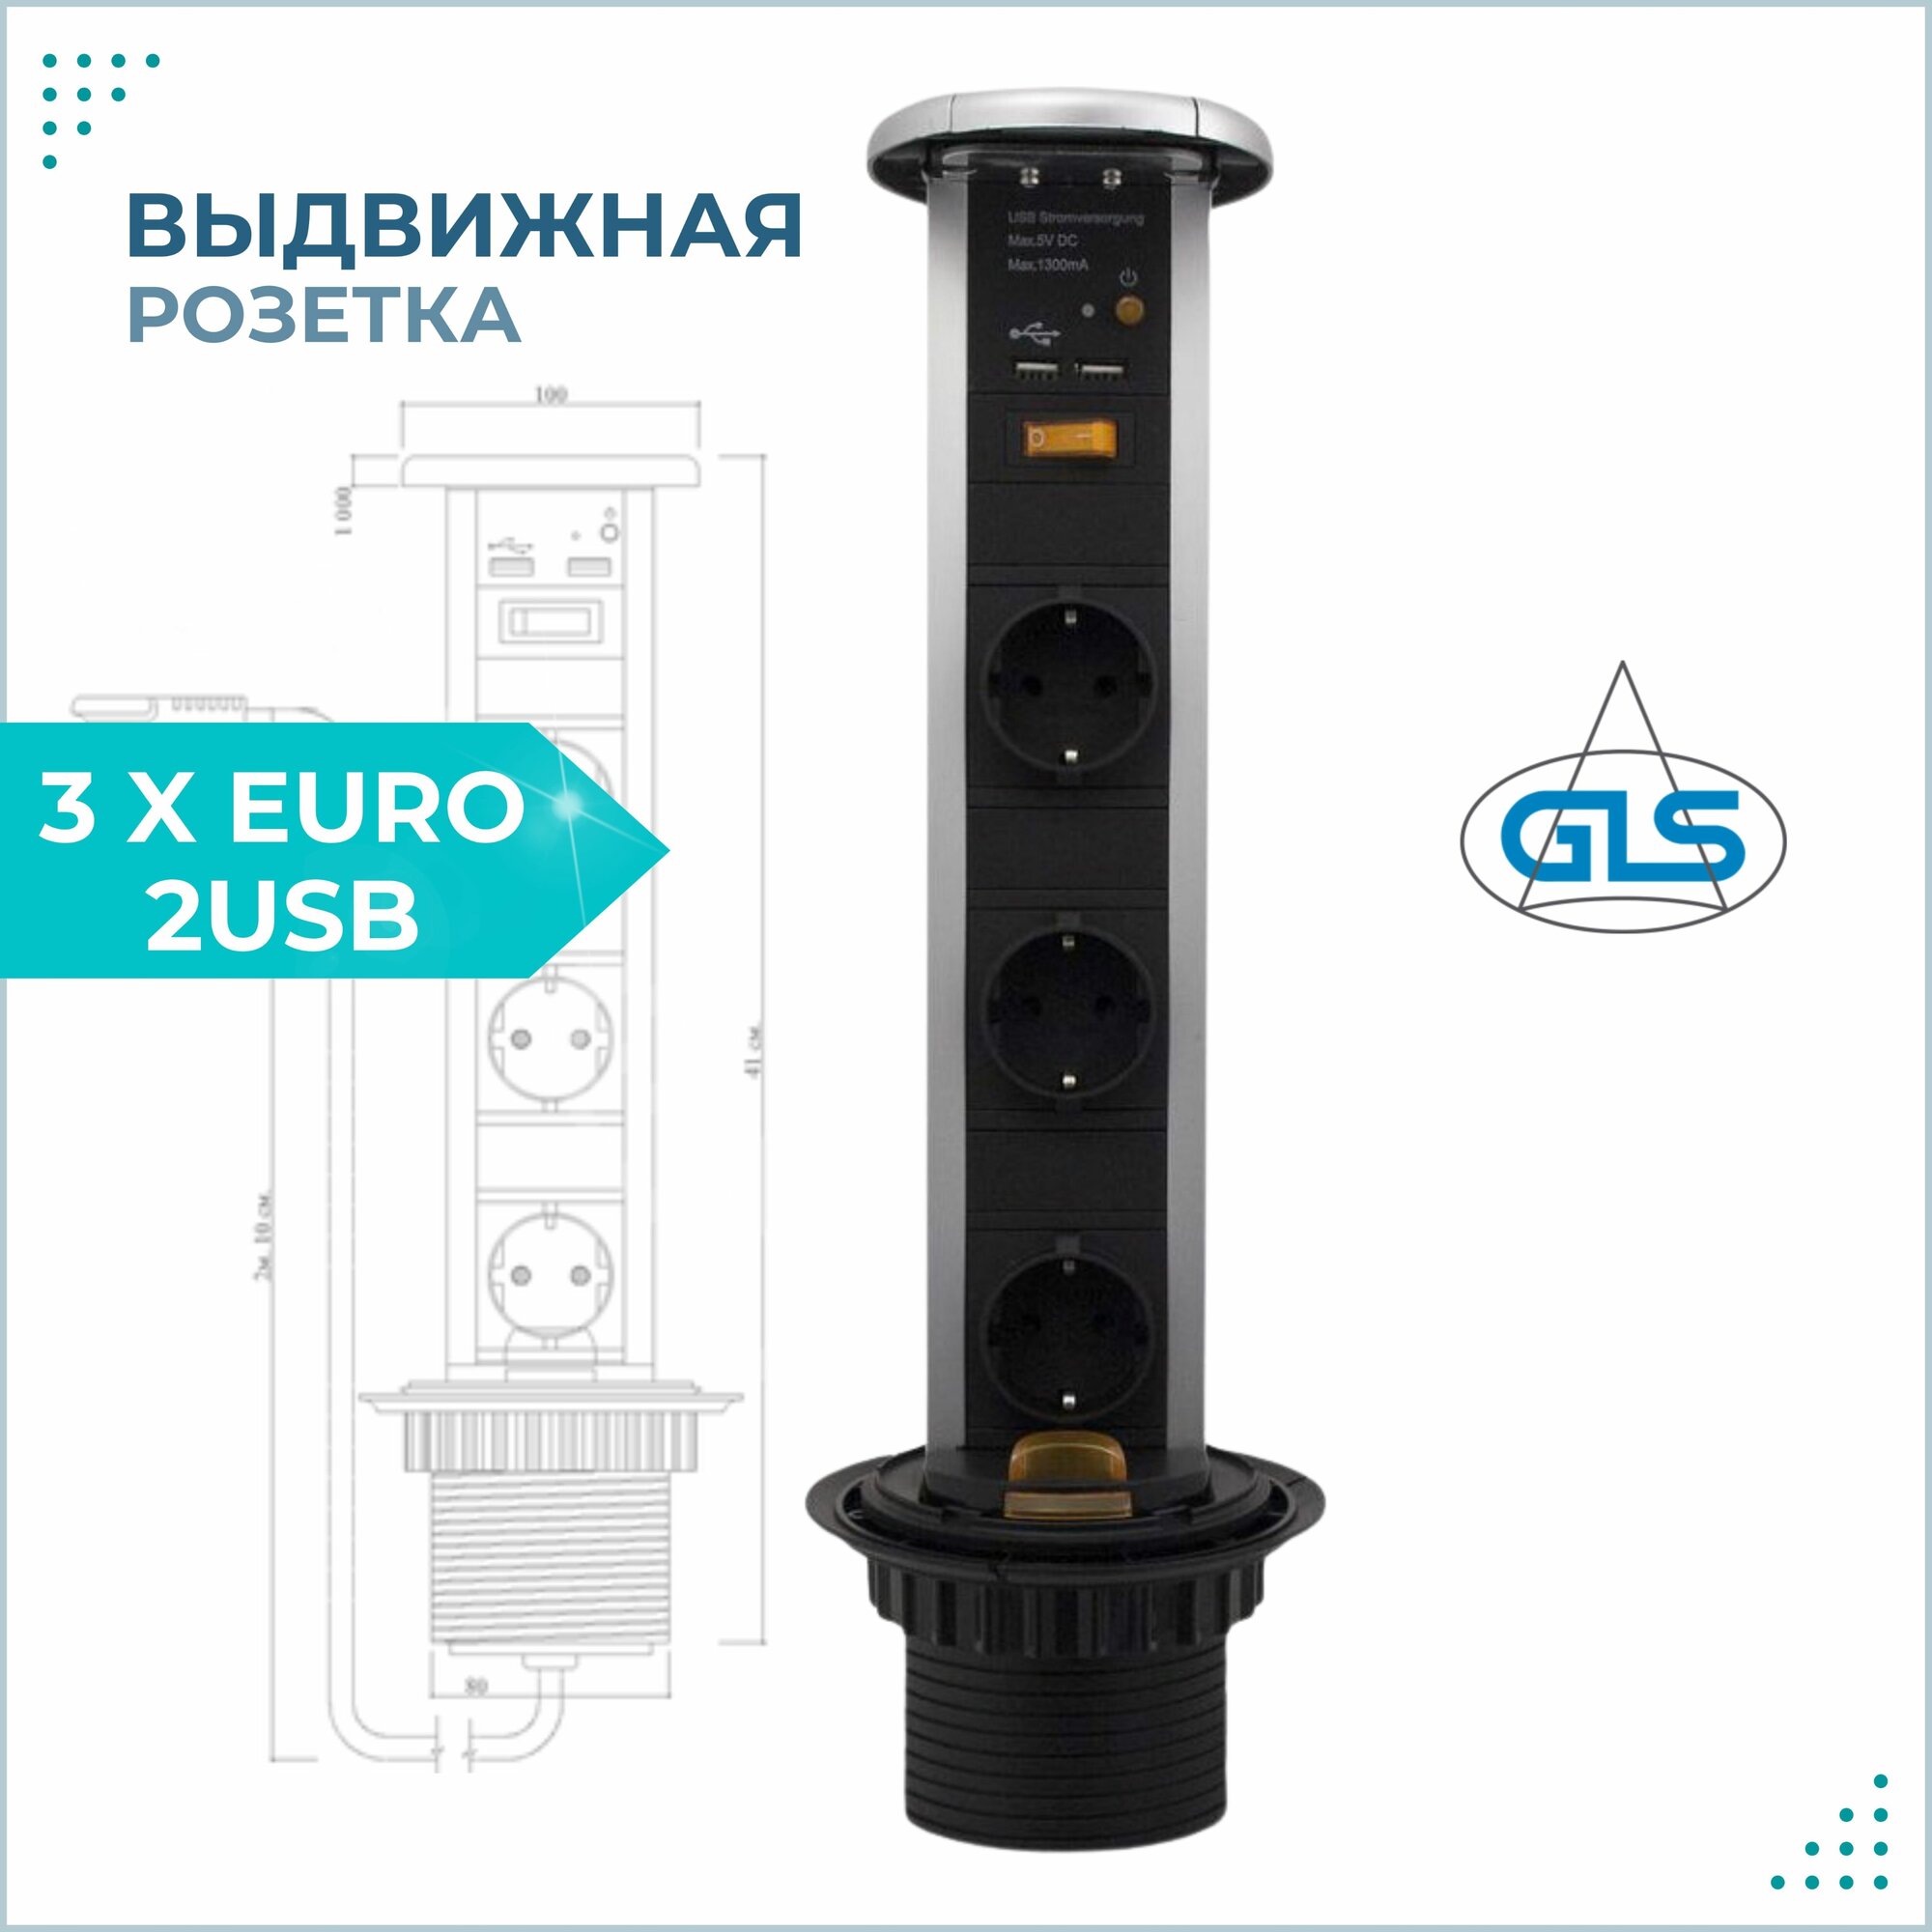 Выдвижная розетка для столешницы POP UP 3 X EURO 2USB GLS блок розеток вертикальный со шнуром питания 2м серебристый